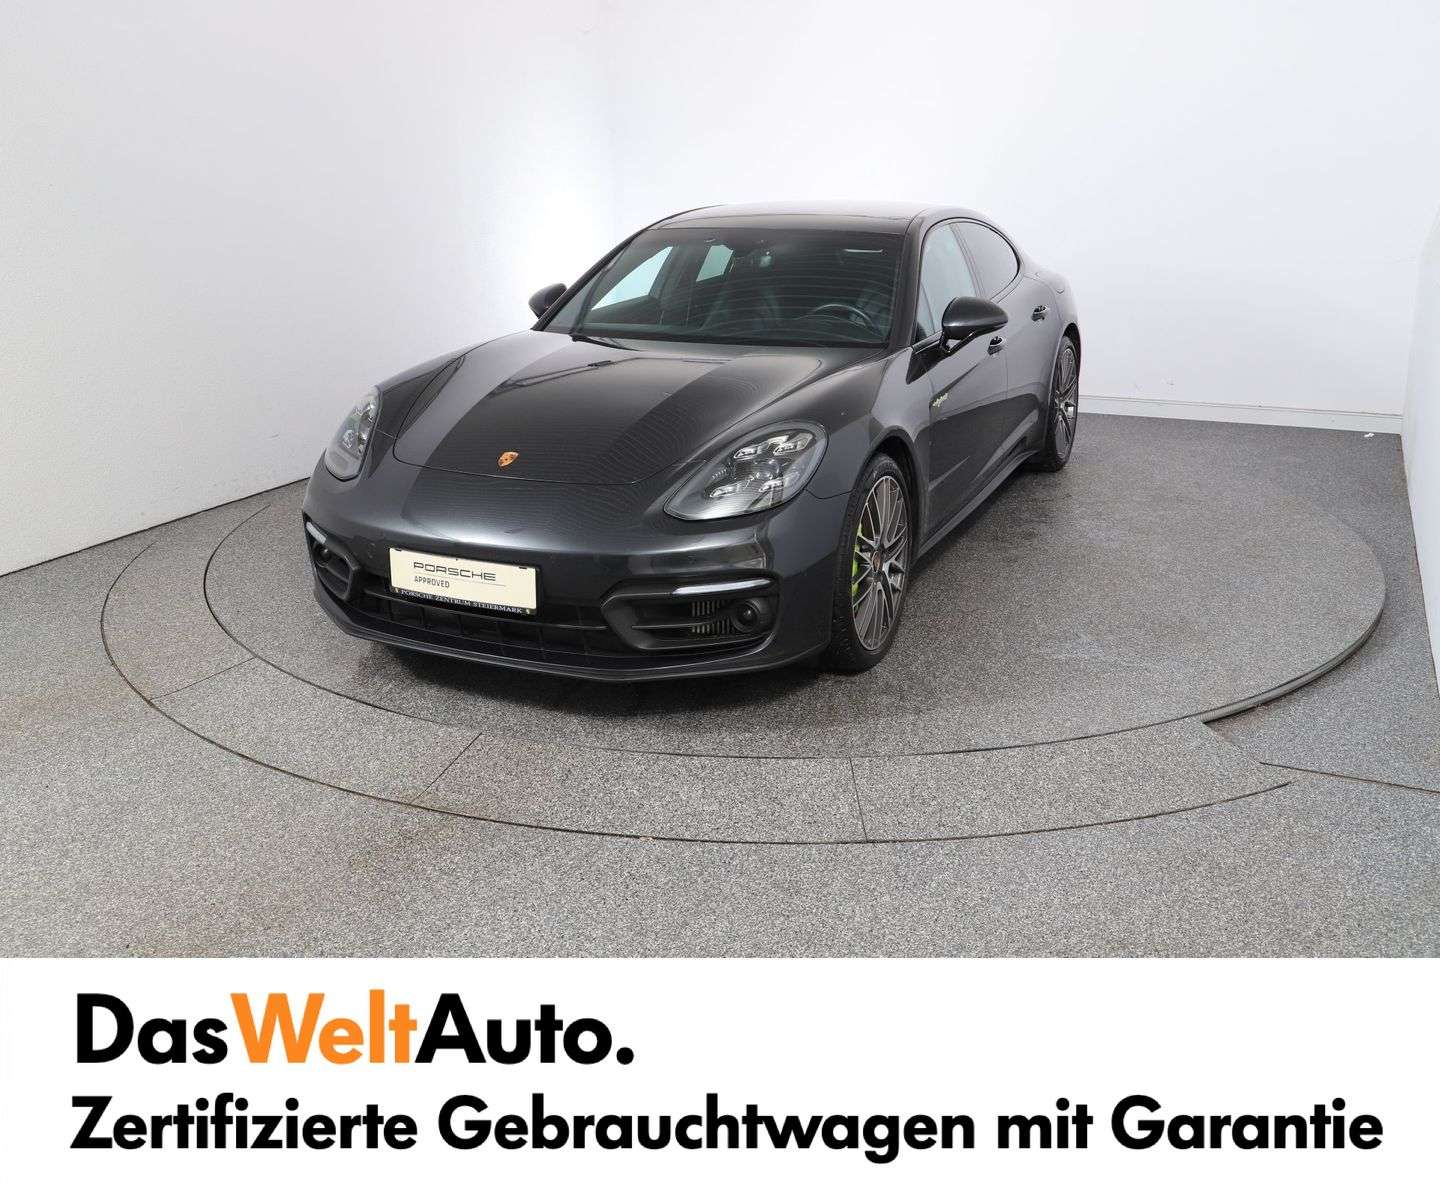 Porsche Panamera Sedan in Grey used in Graz for € 88,850.-